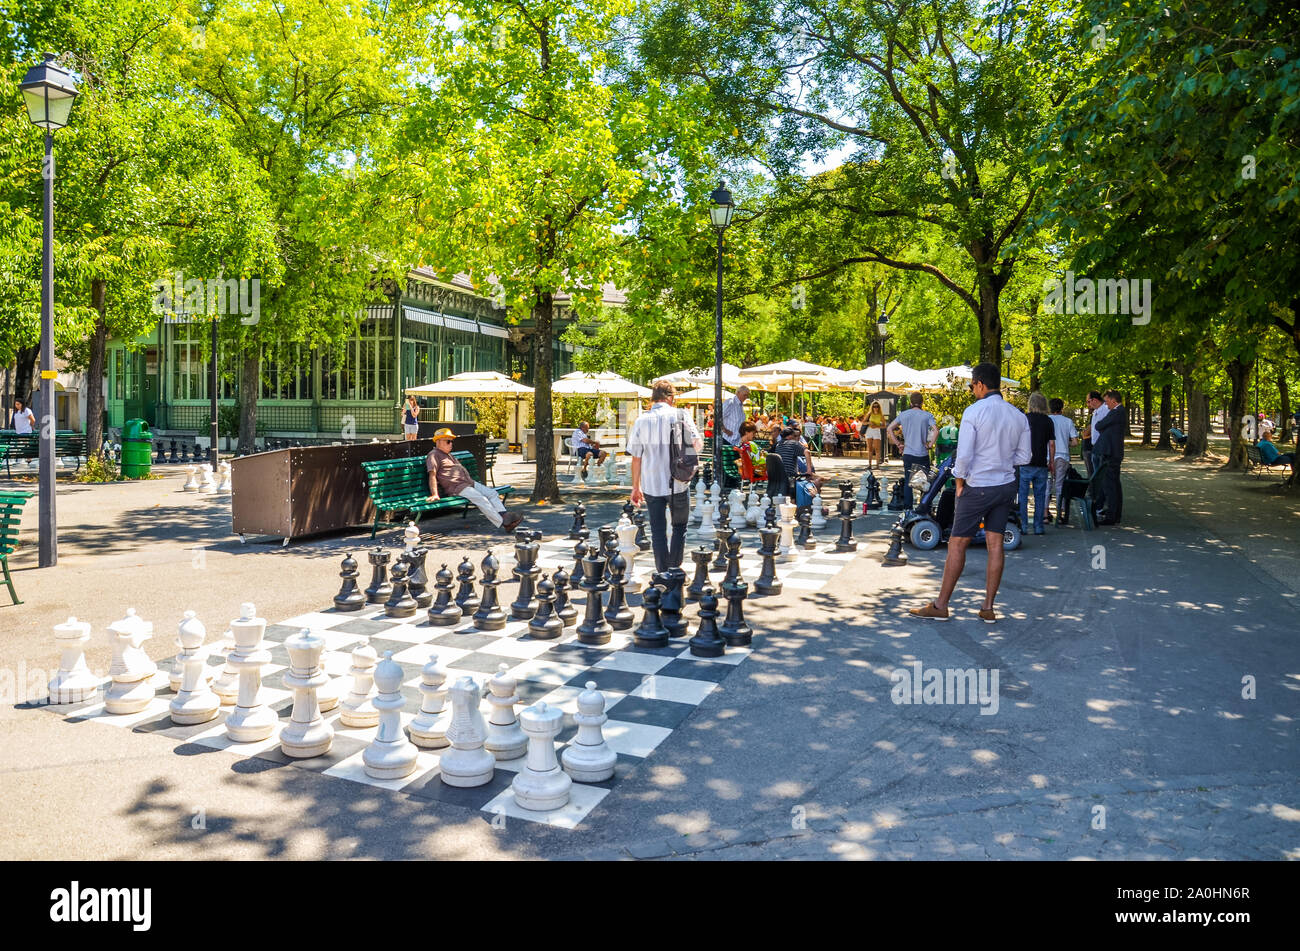 Ginevra, Svizzera - Luglio 19, 2019: persone giocare un esterno di partita a scacchi con gli scacchi giganti di pezzi nel Parc Des Bastions. Scacchi grandi pannelli sono situati all'ingresso del parco nel centro della citta'. Foto Stock